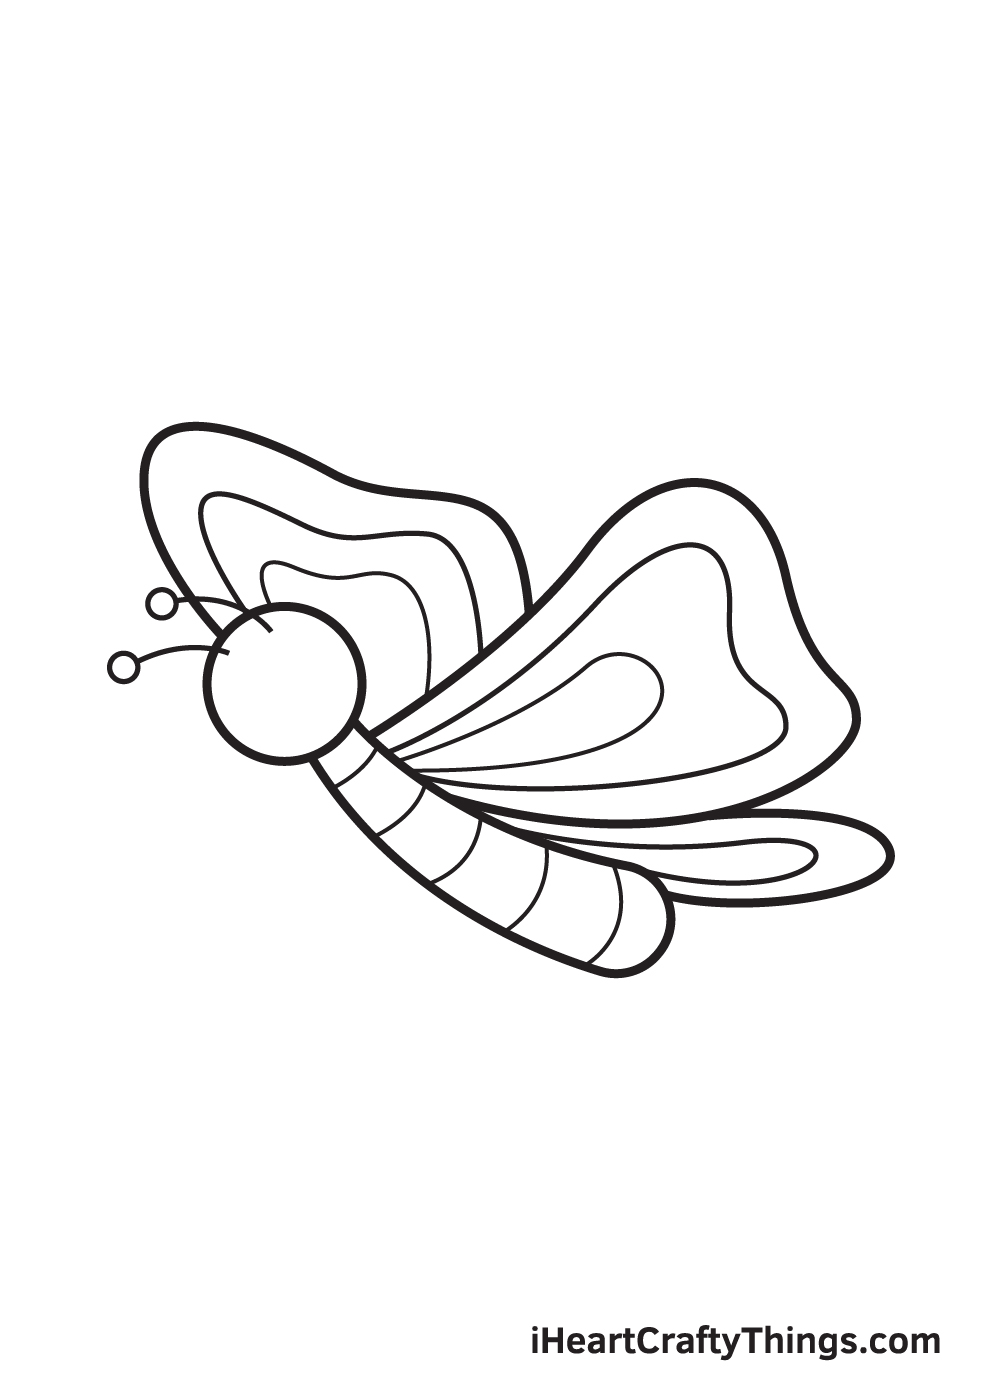 Butterfly DRAWING – STEP 8 - Hướng dẫn chi tiết cách vẽ con bướm đơn giản với 9 bước cơ bản